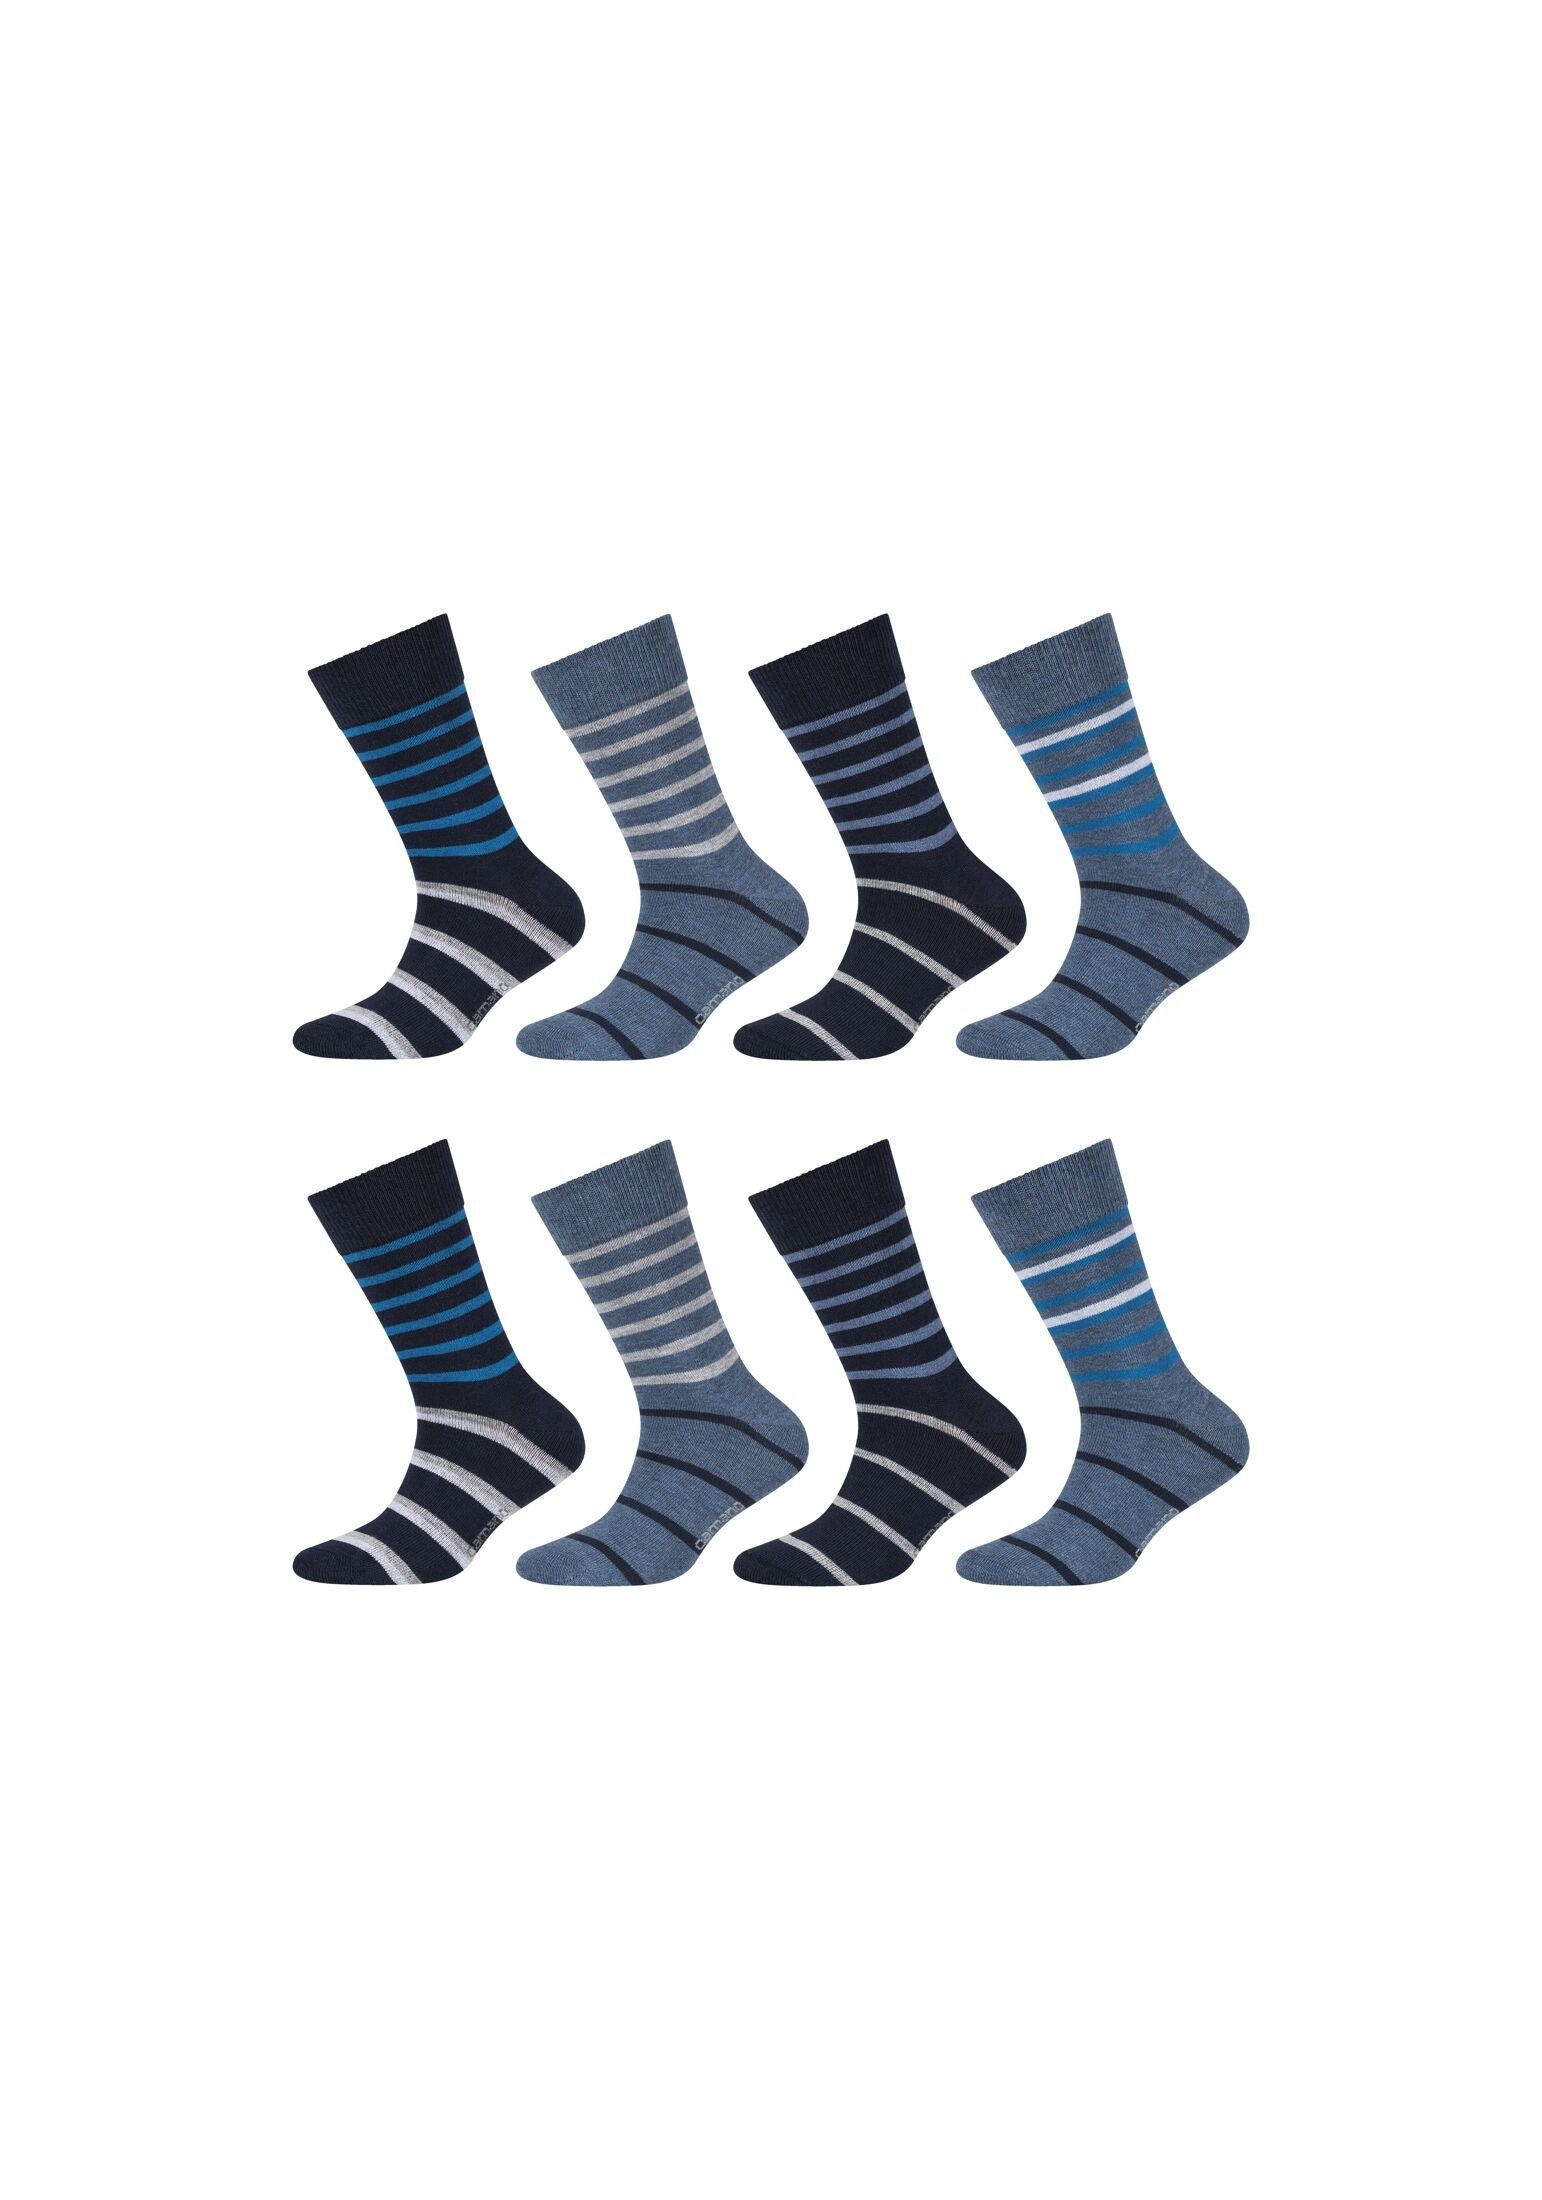 Camano Socken Socken 8er Pack blue